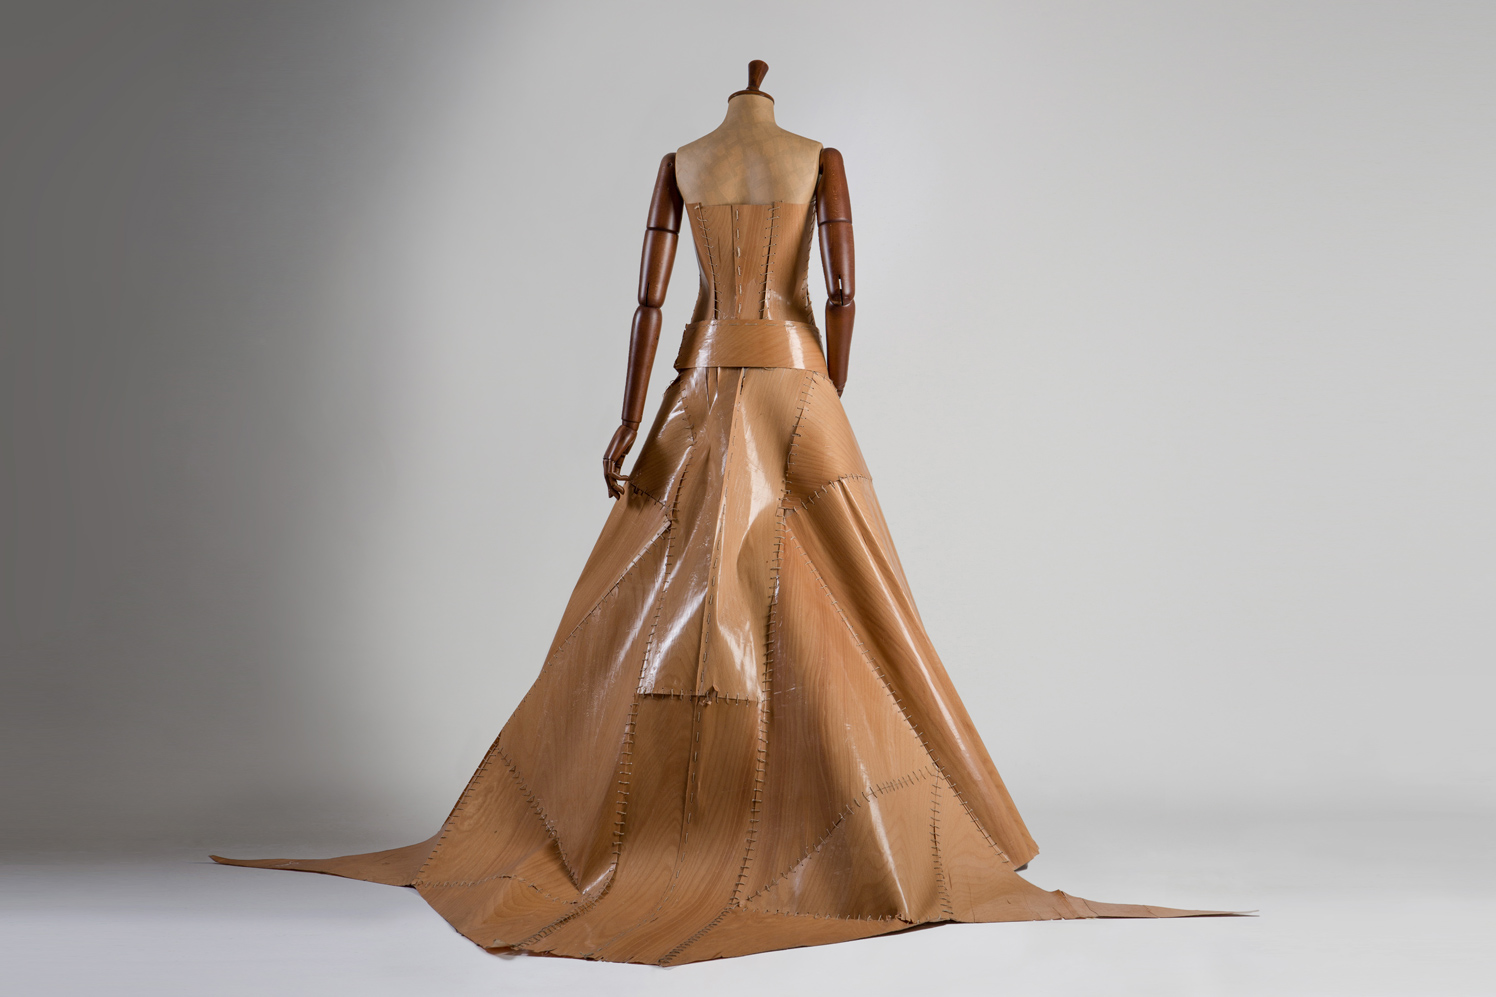 Wood-ing Gown, un Abito da Sposa realizzato in Legno, by Matthan Gori.